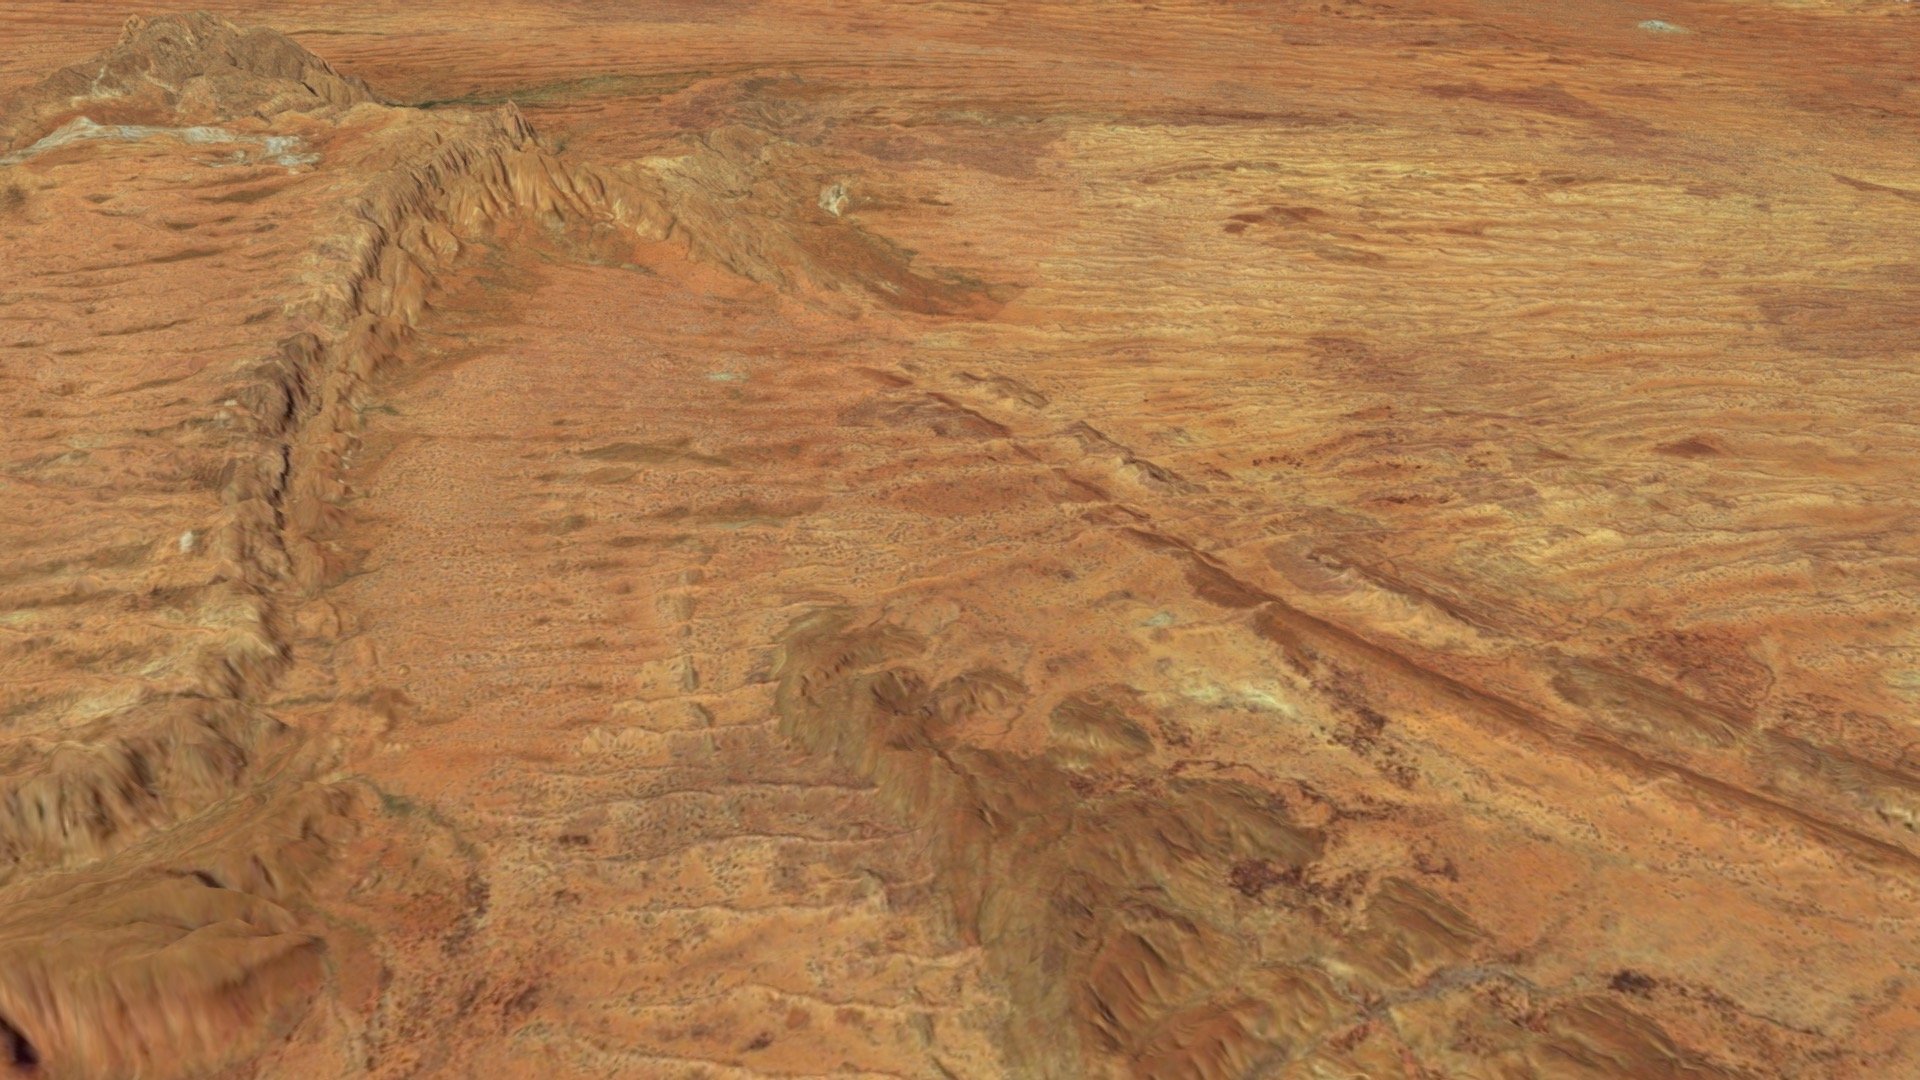 eroded desert plains of Australia - Eroded desert plains - Buy Royalty Free 3D model by Stance Hurst (@Cacti3D) 3d model